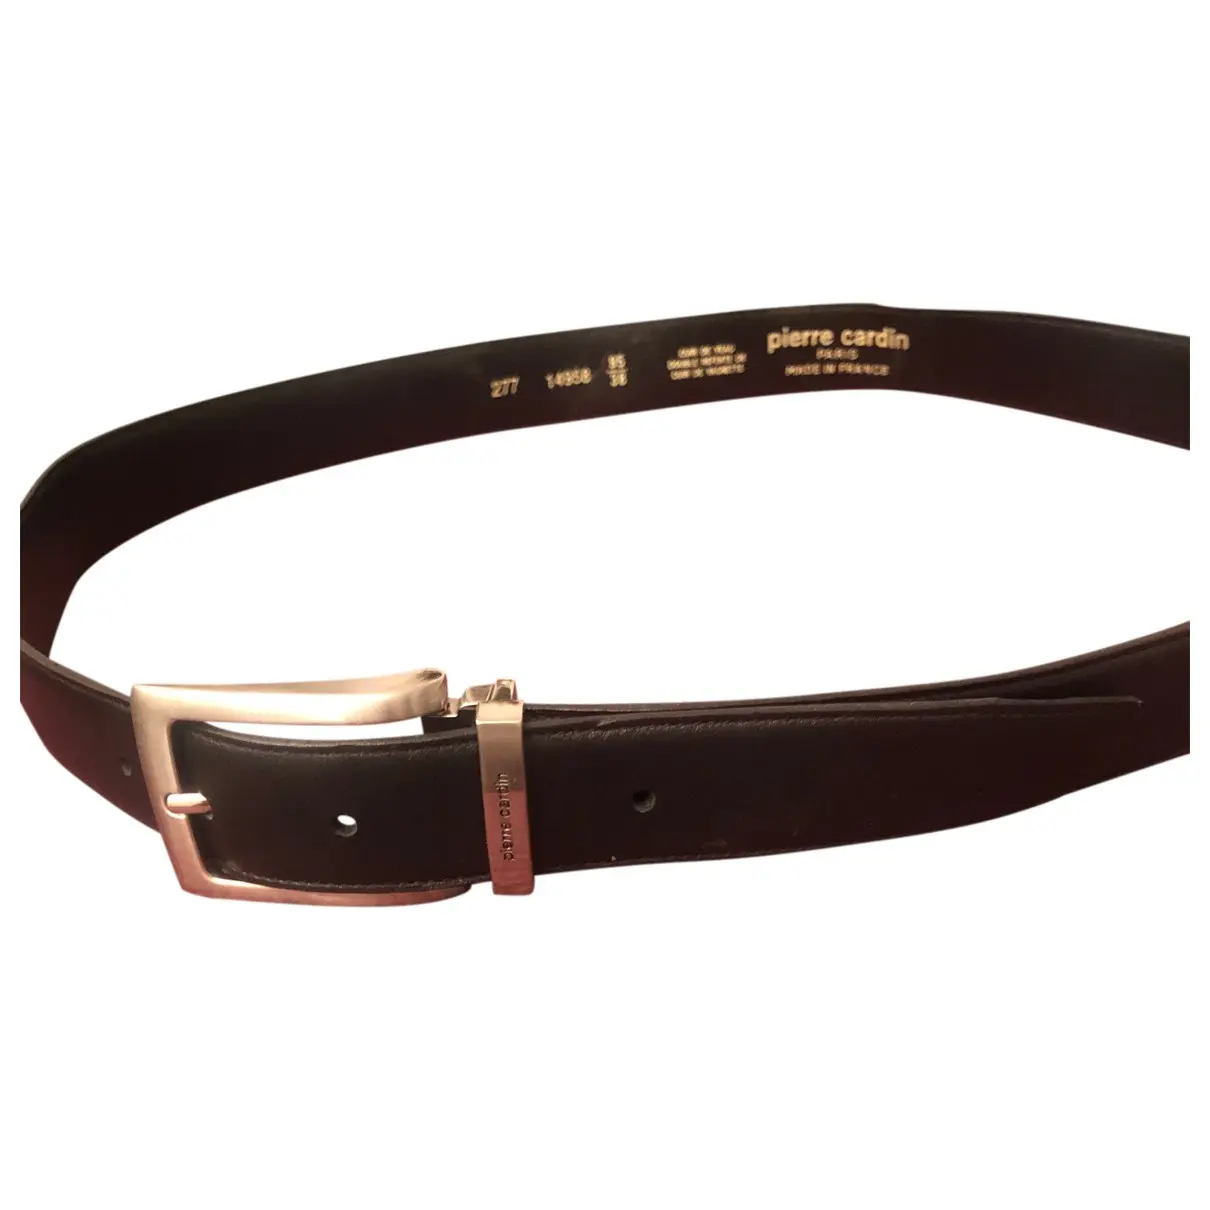 Leather belt Pierre Cardin